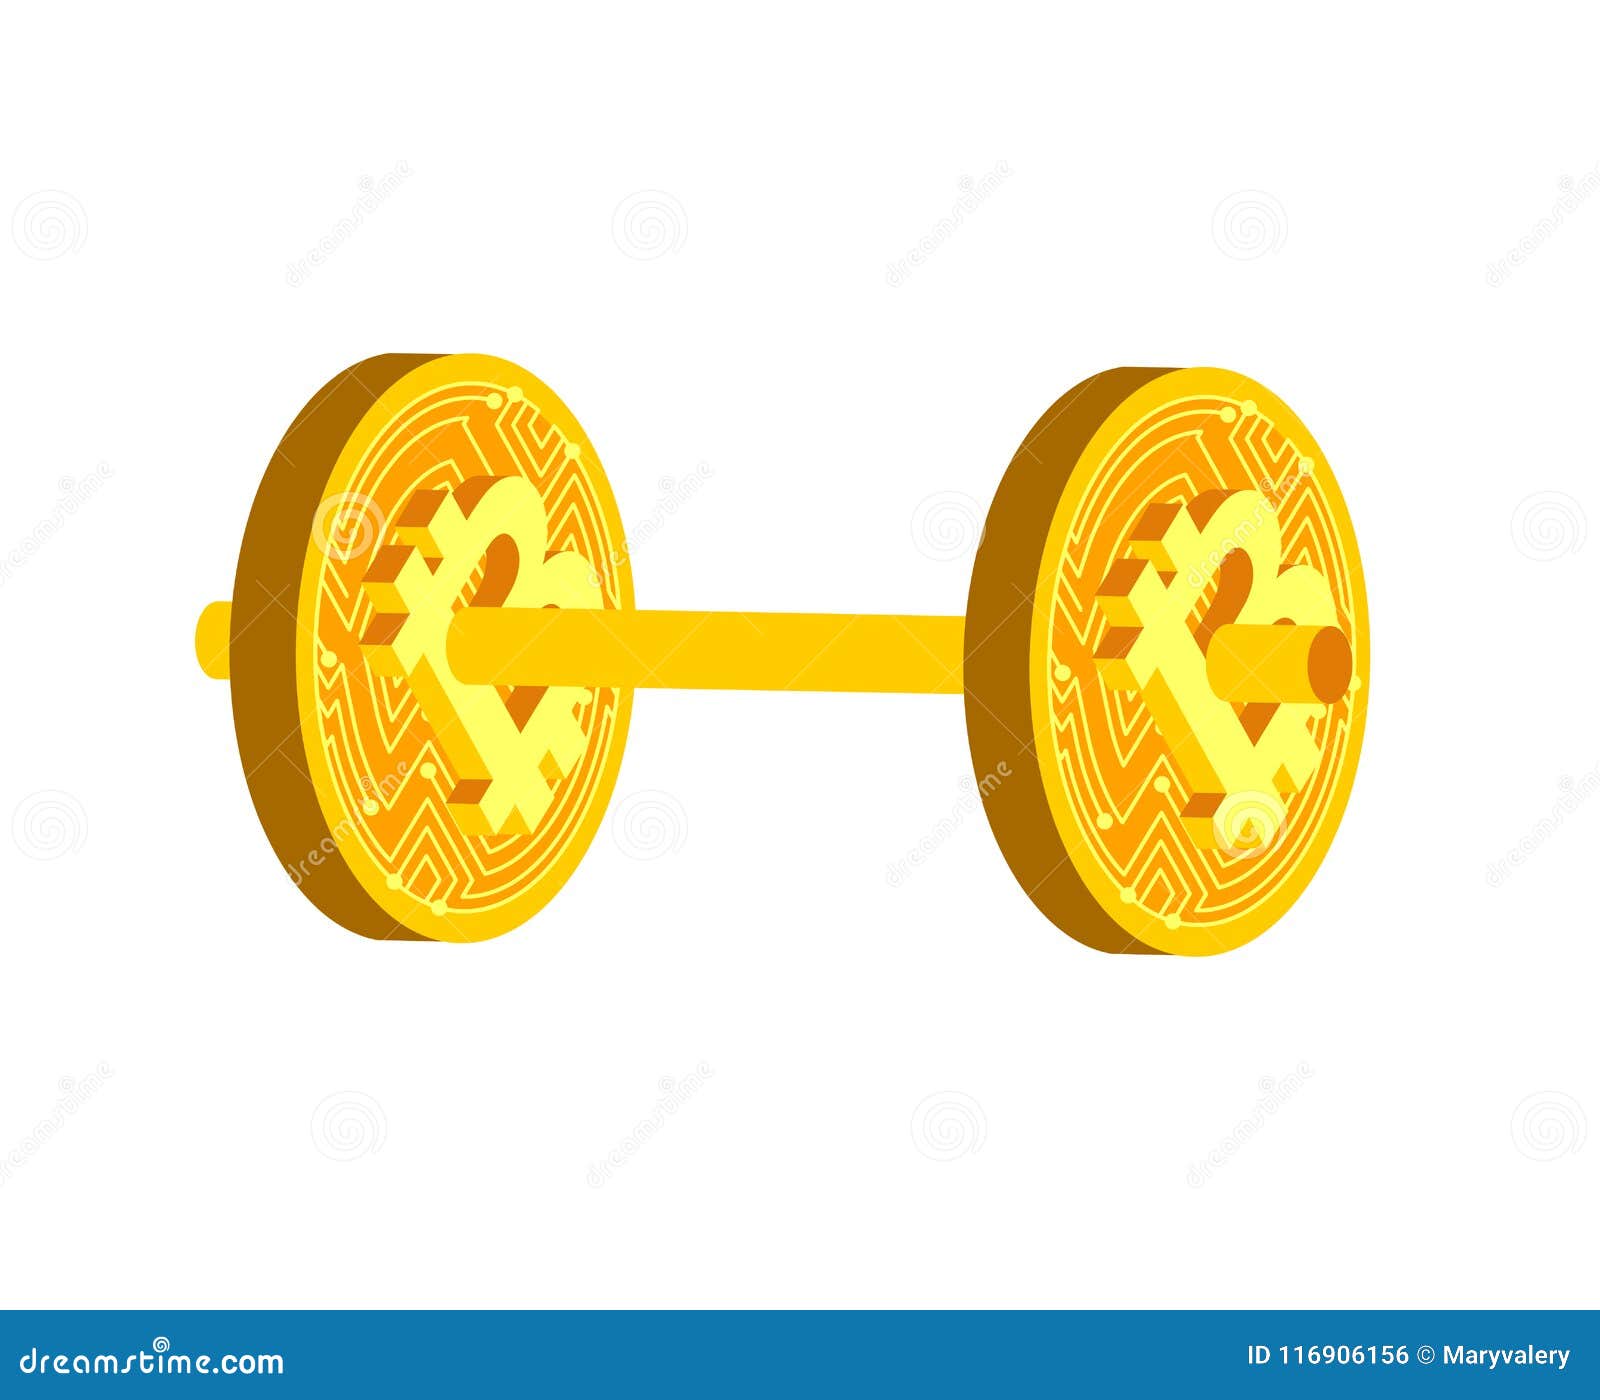 Cos'è il Bitcoin? Storia, caratteristiche, vantaggi e svantaggi